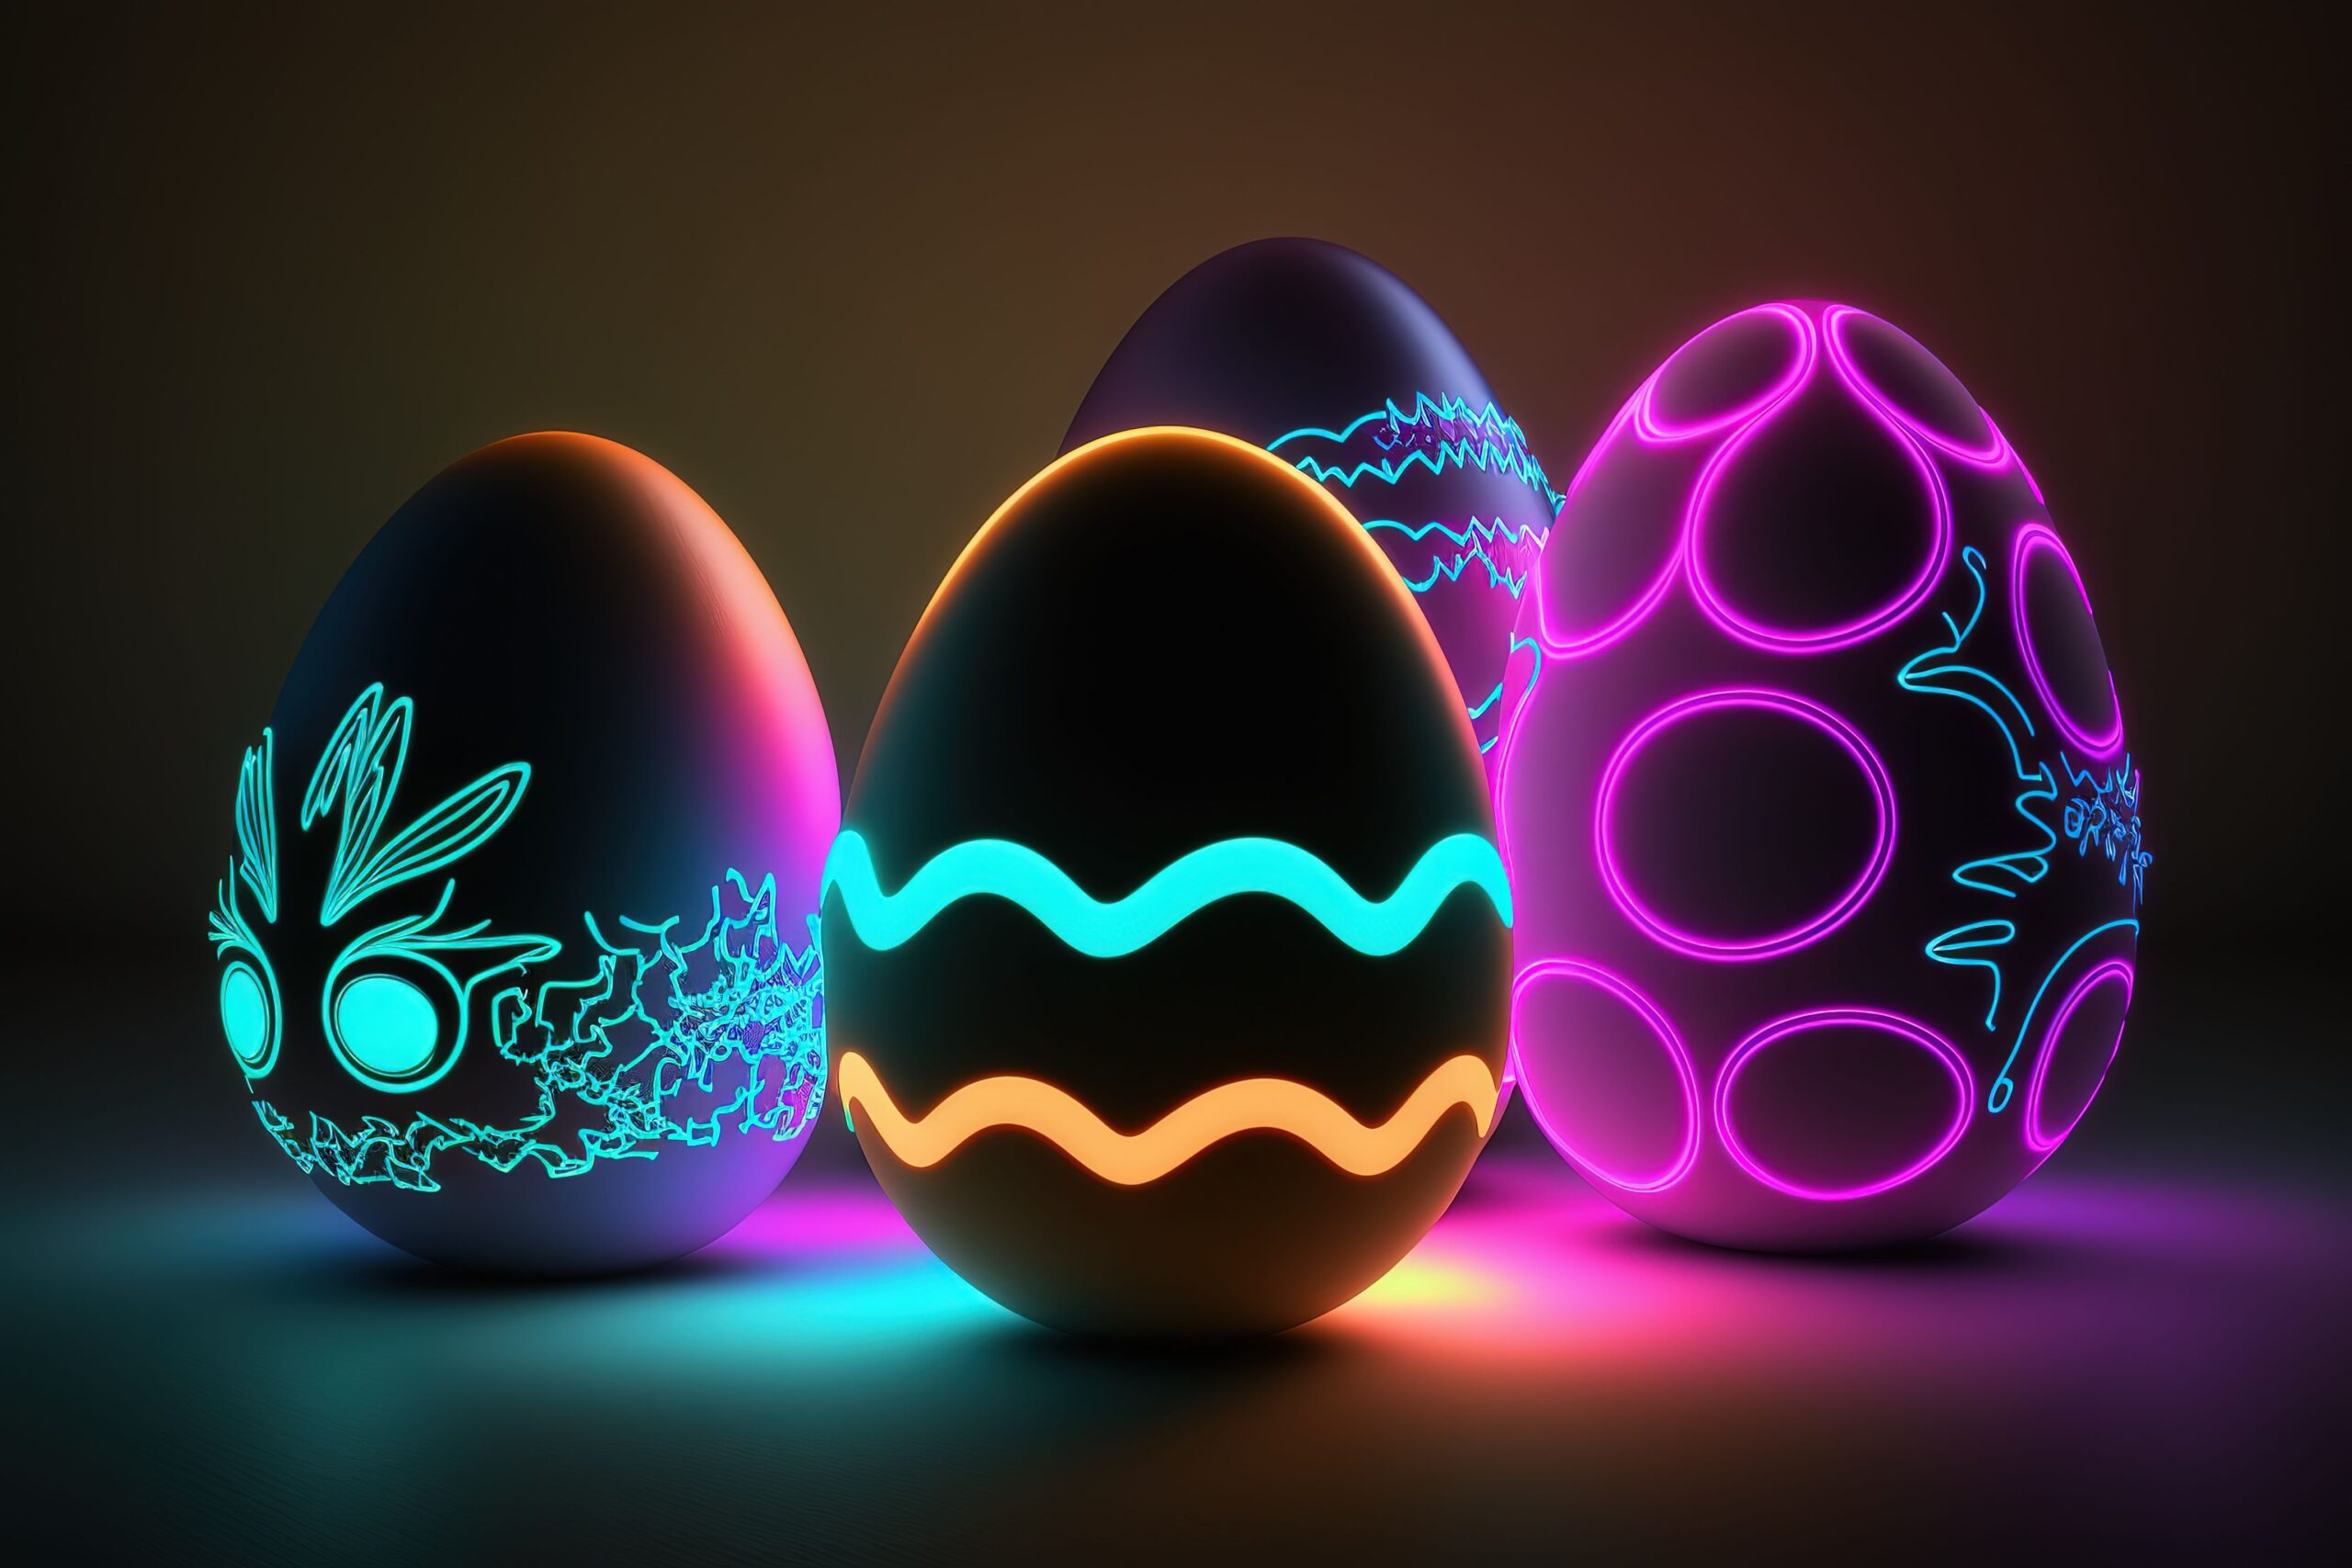 10 best Easter eggs in tech